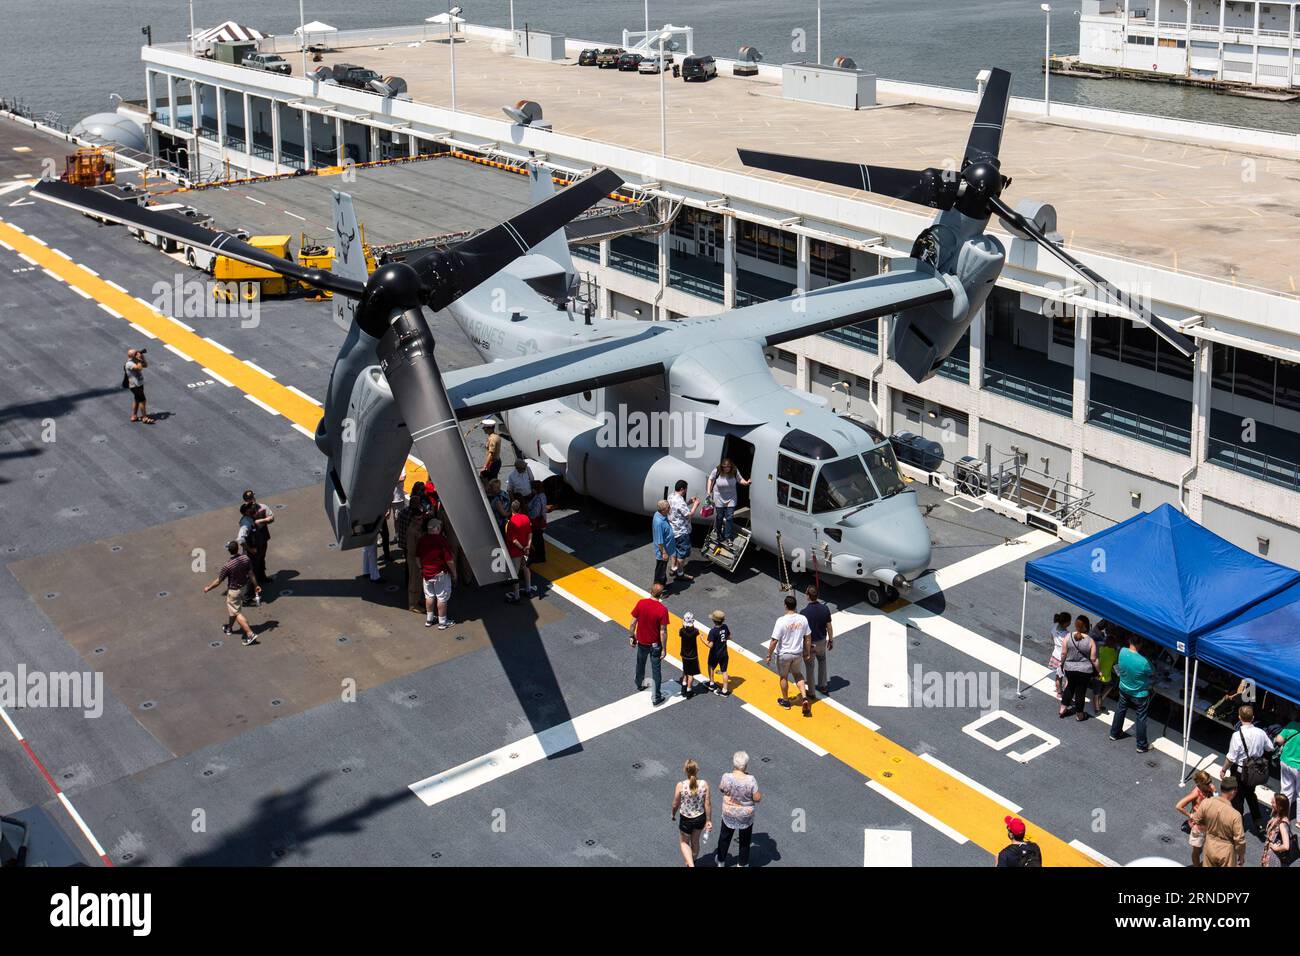 Eine V-22 Osprey Tiltrotor-Maschine ist an Bord der USS Bataan (LHD-5) abgebildet, einem amphibischen Angriffsschiff der Wasp-Klasse, das während der 28. Jährlichen New York Fleet Week am 27. Mai 2016 am Pier 88 in Manhattan ankerte. Die New York Fleet Week findet vom 25. Mai bis 30. Mai statt, wo hunderte Soldaten der Streitkräfte New York City im Rahmen der Gedenkfeiern besuchen. ) Die US-NEW YORK-FLOTTE DER WOCHE-USS BATAAN LixMuzi PUBLICATIONxNOTxINxCHN A V 22 Osprey Tilt Rotorflugzeug IST AN Bord der USS Bataan LHD 5 Wasp Class Amphibious Assault Ship Docke abgebildet Stockfoto